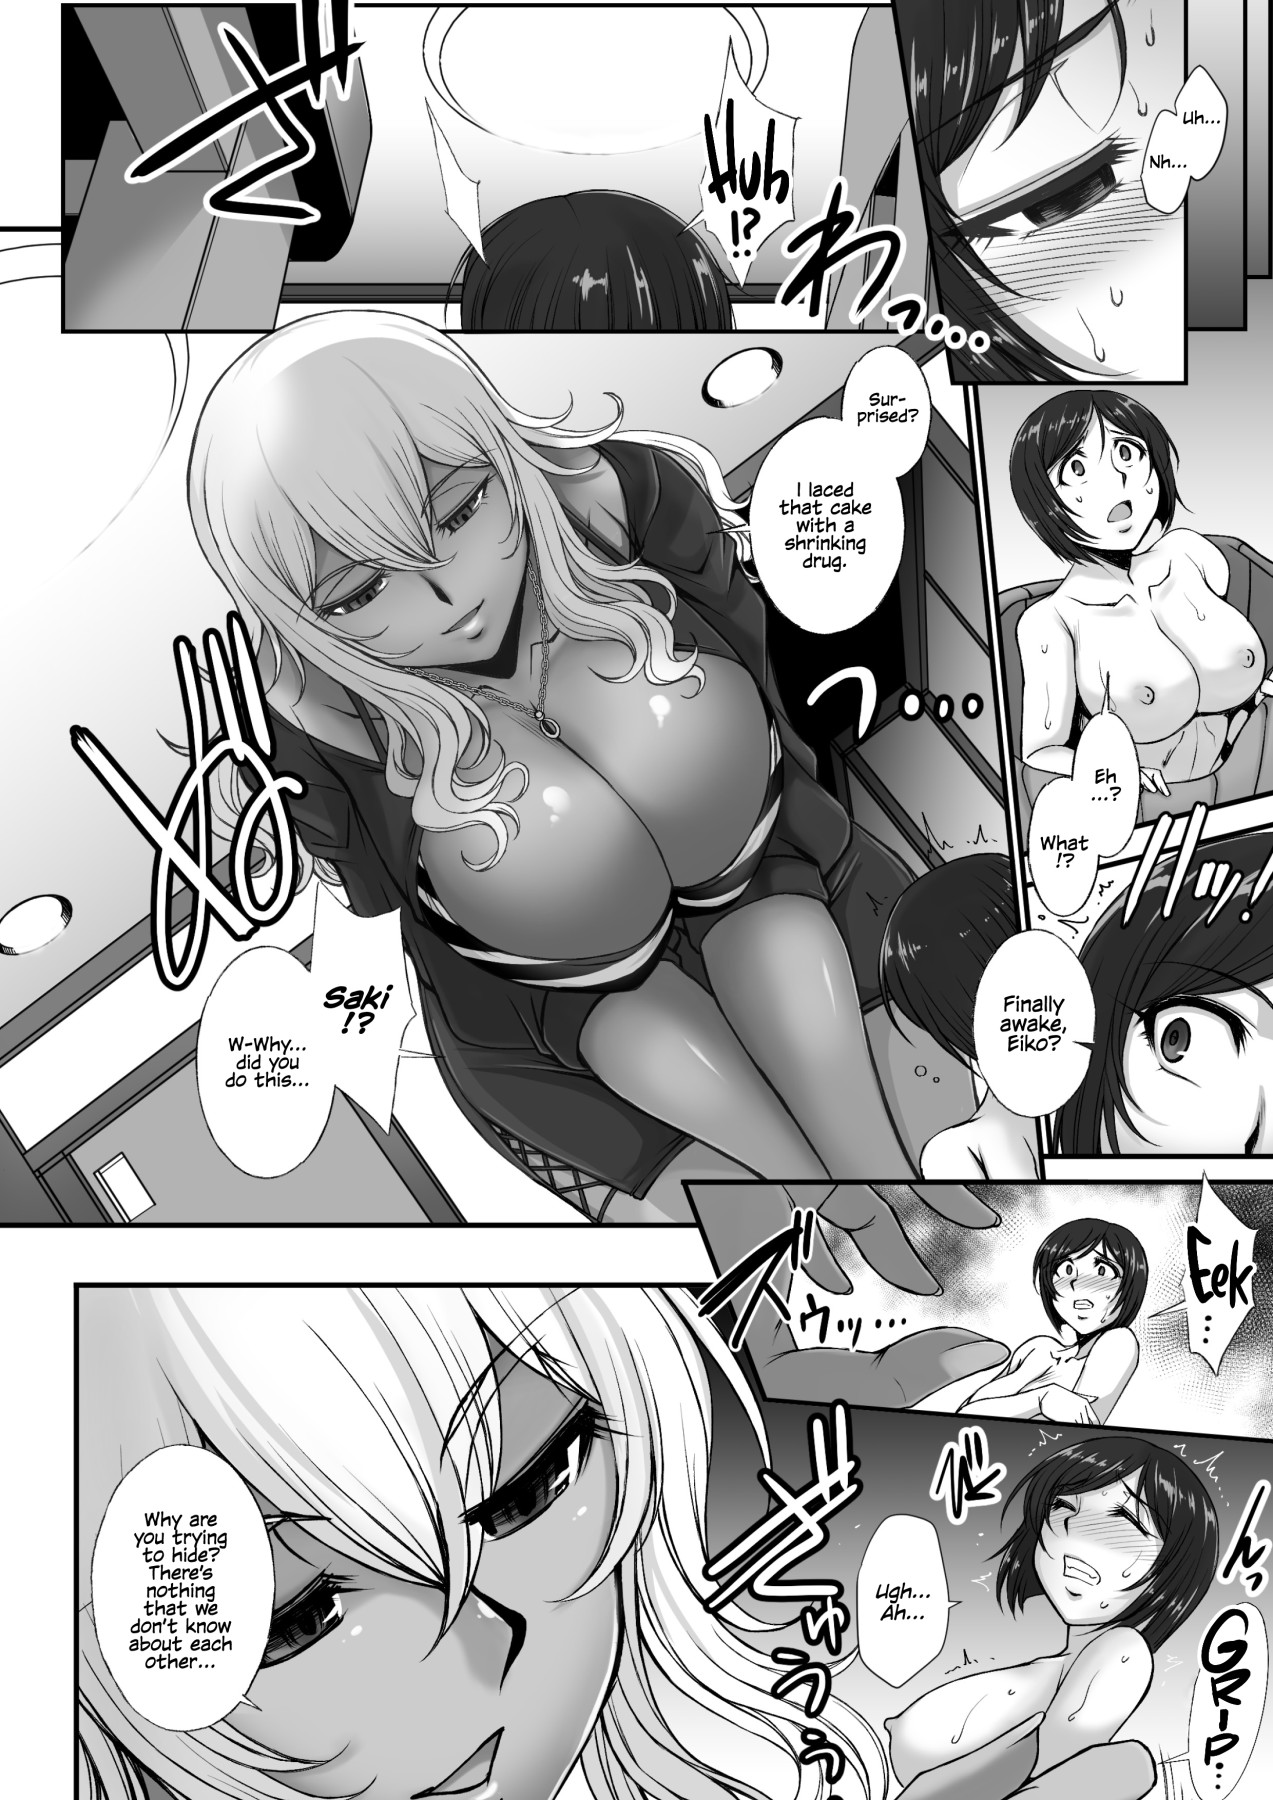 Hentai Manga Comic-Everyone's Having Their Own Way?-Read-2